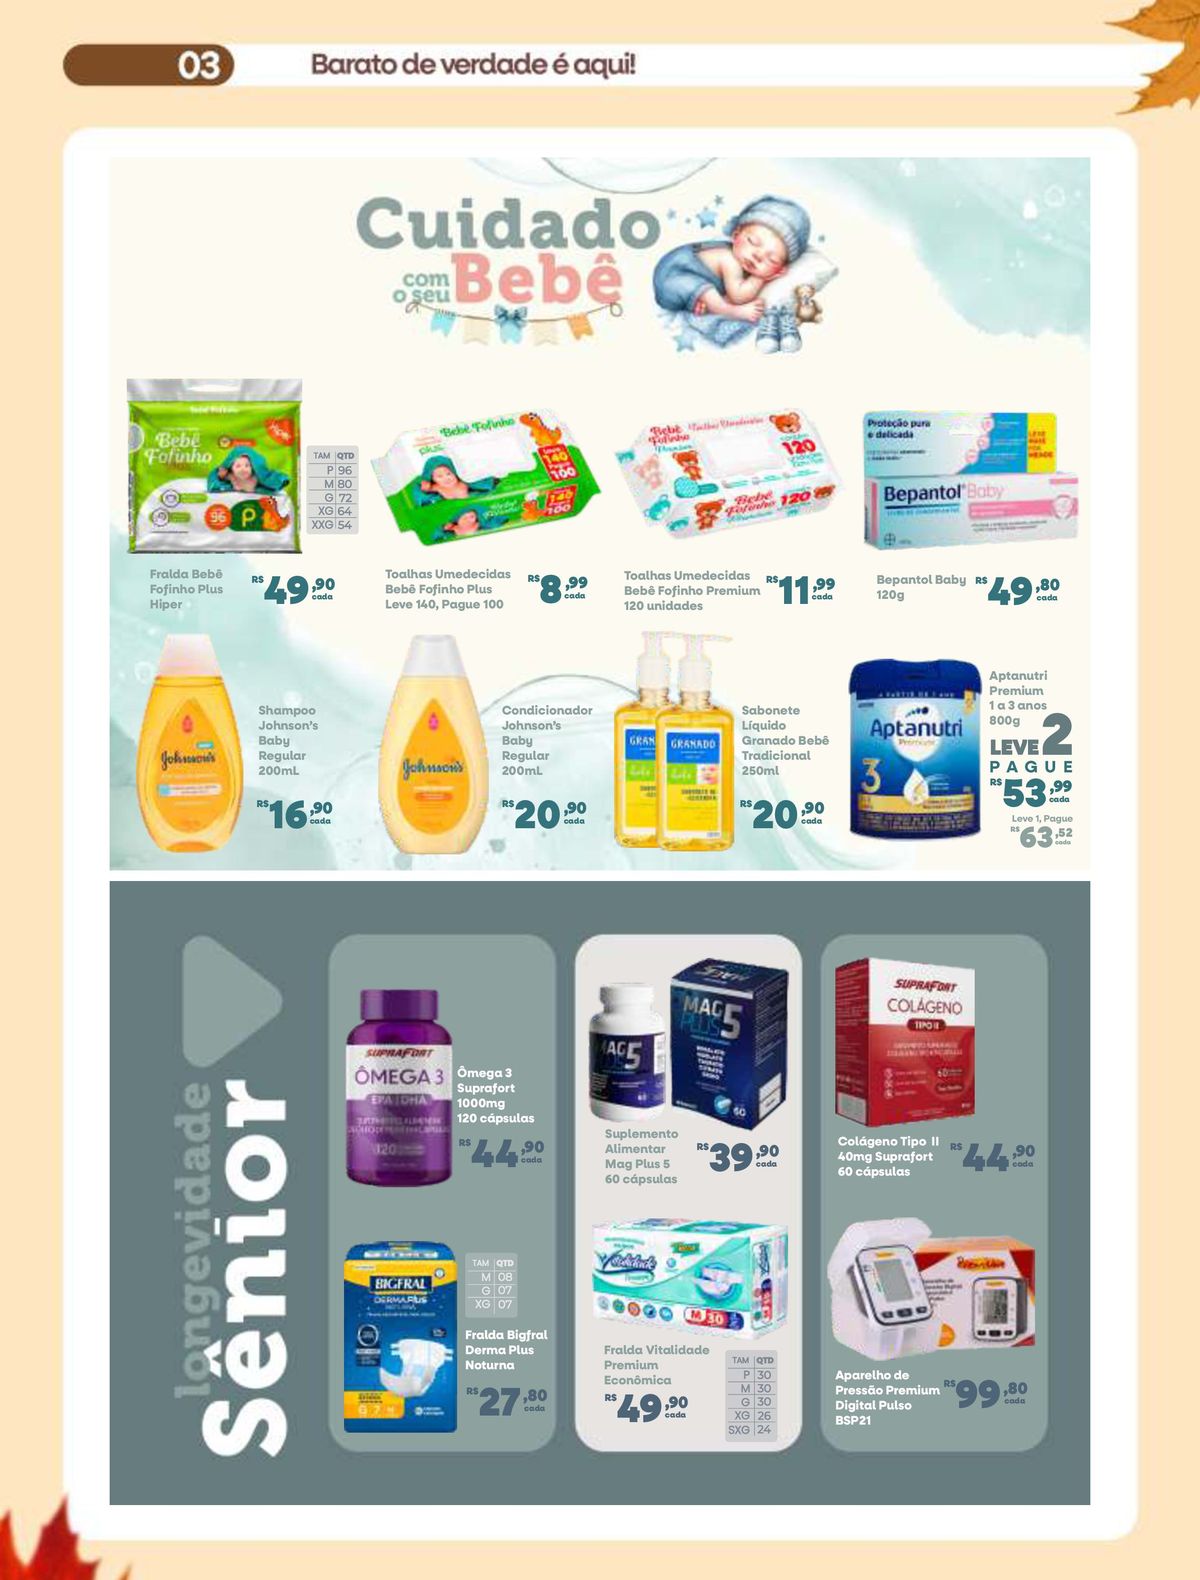 Ofertas em produtos de higiene para bebês e suplementos alimentares